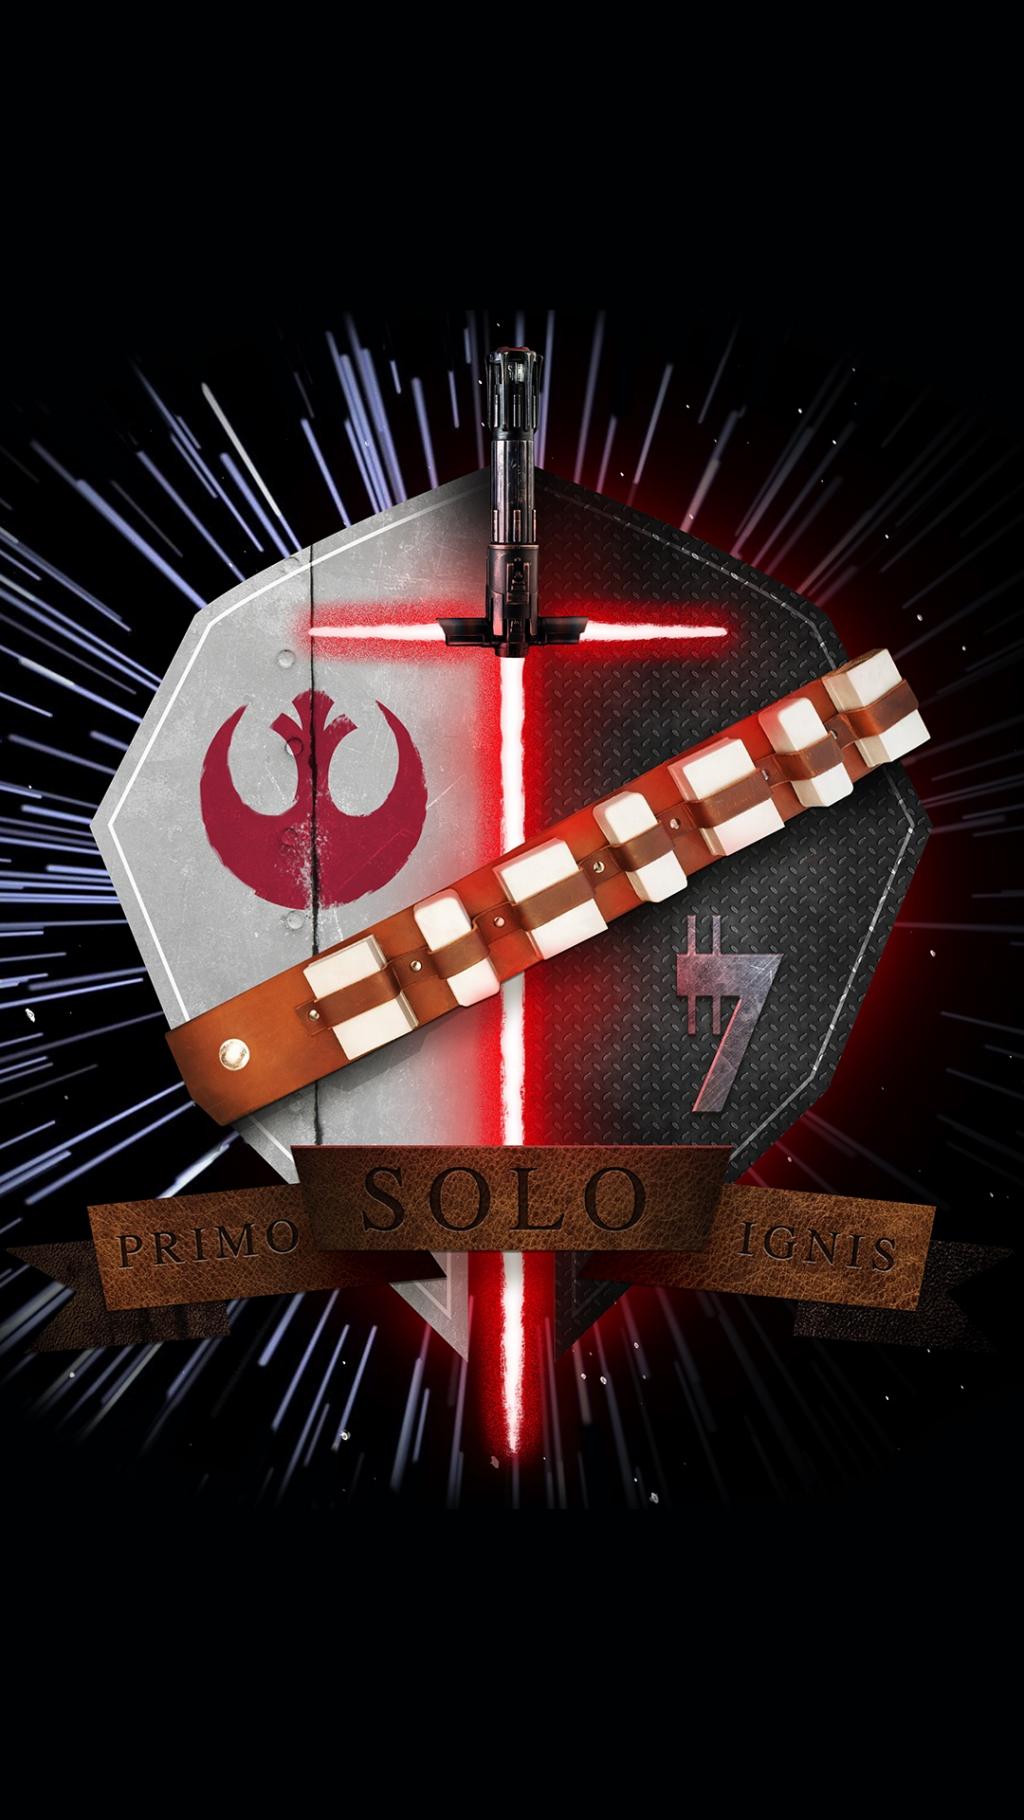 星球大战Family Crest Han Solo Primo Solo Ignis iPhone 6+高清壁纸